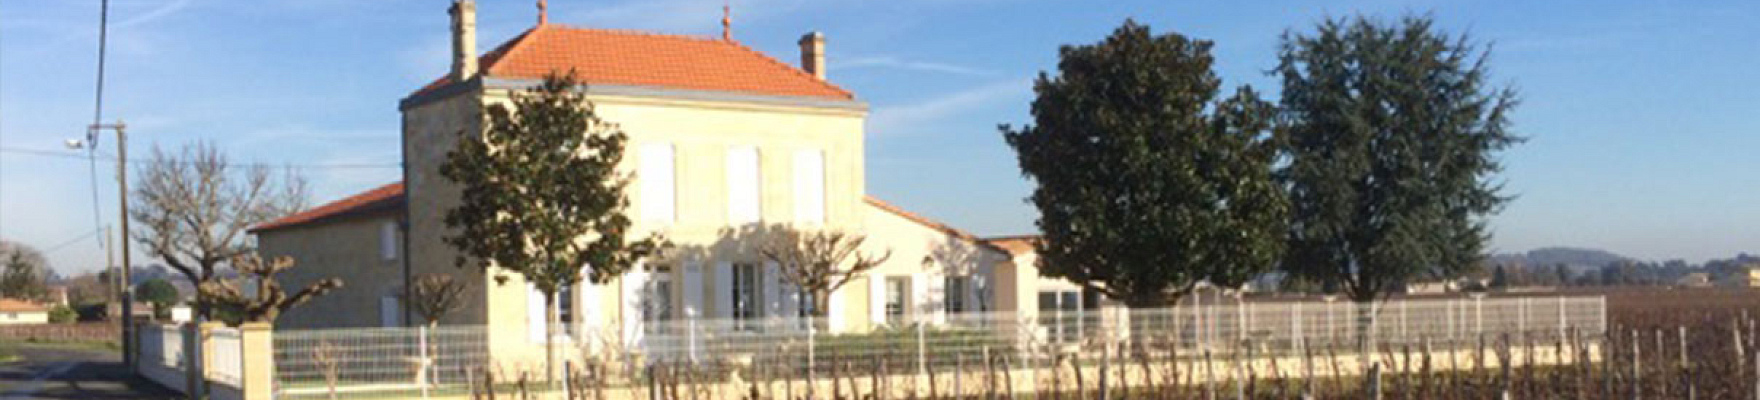 Château Lusseau